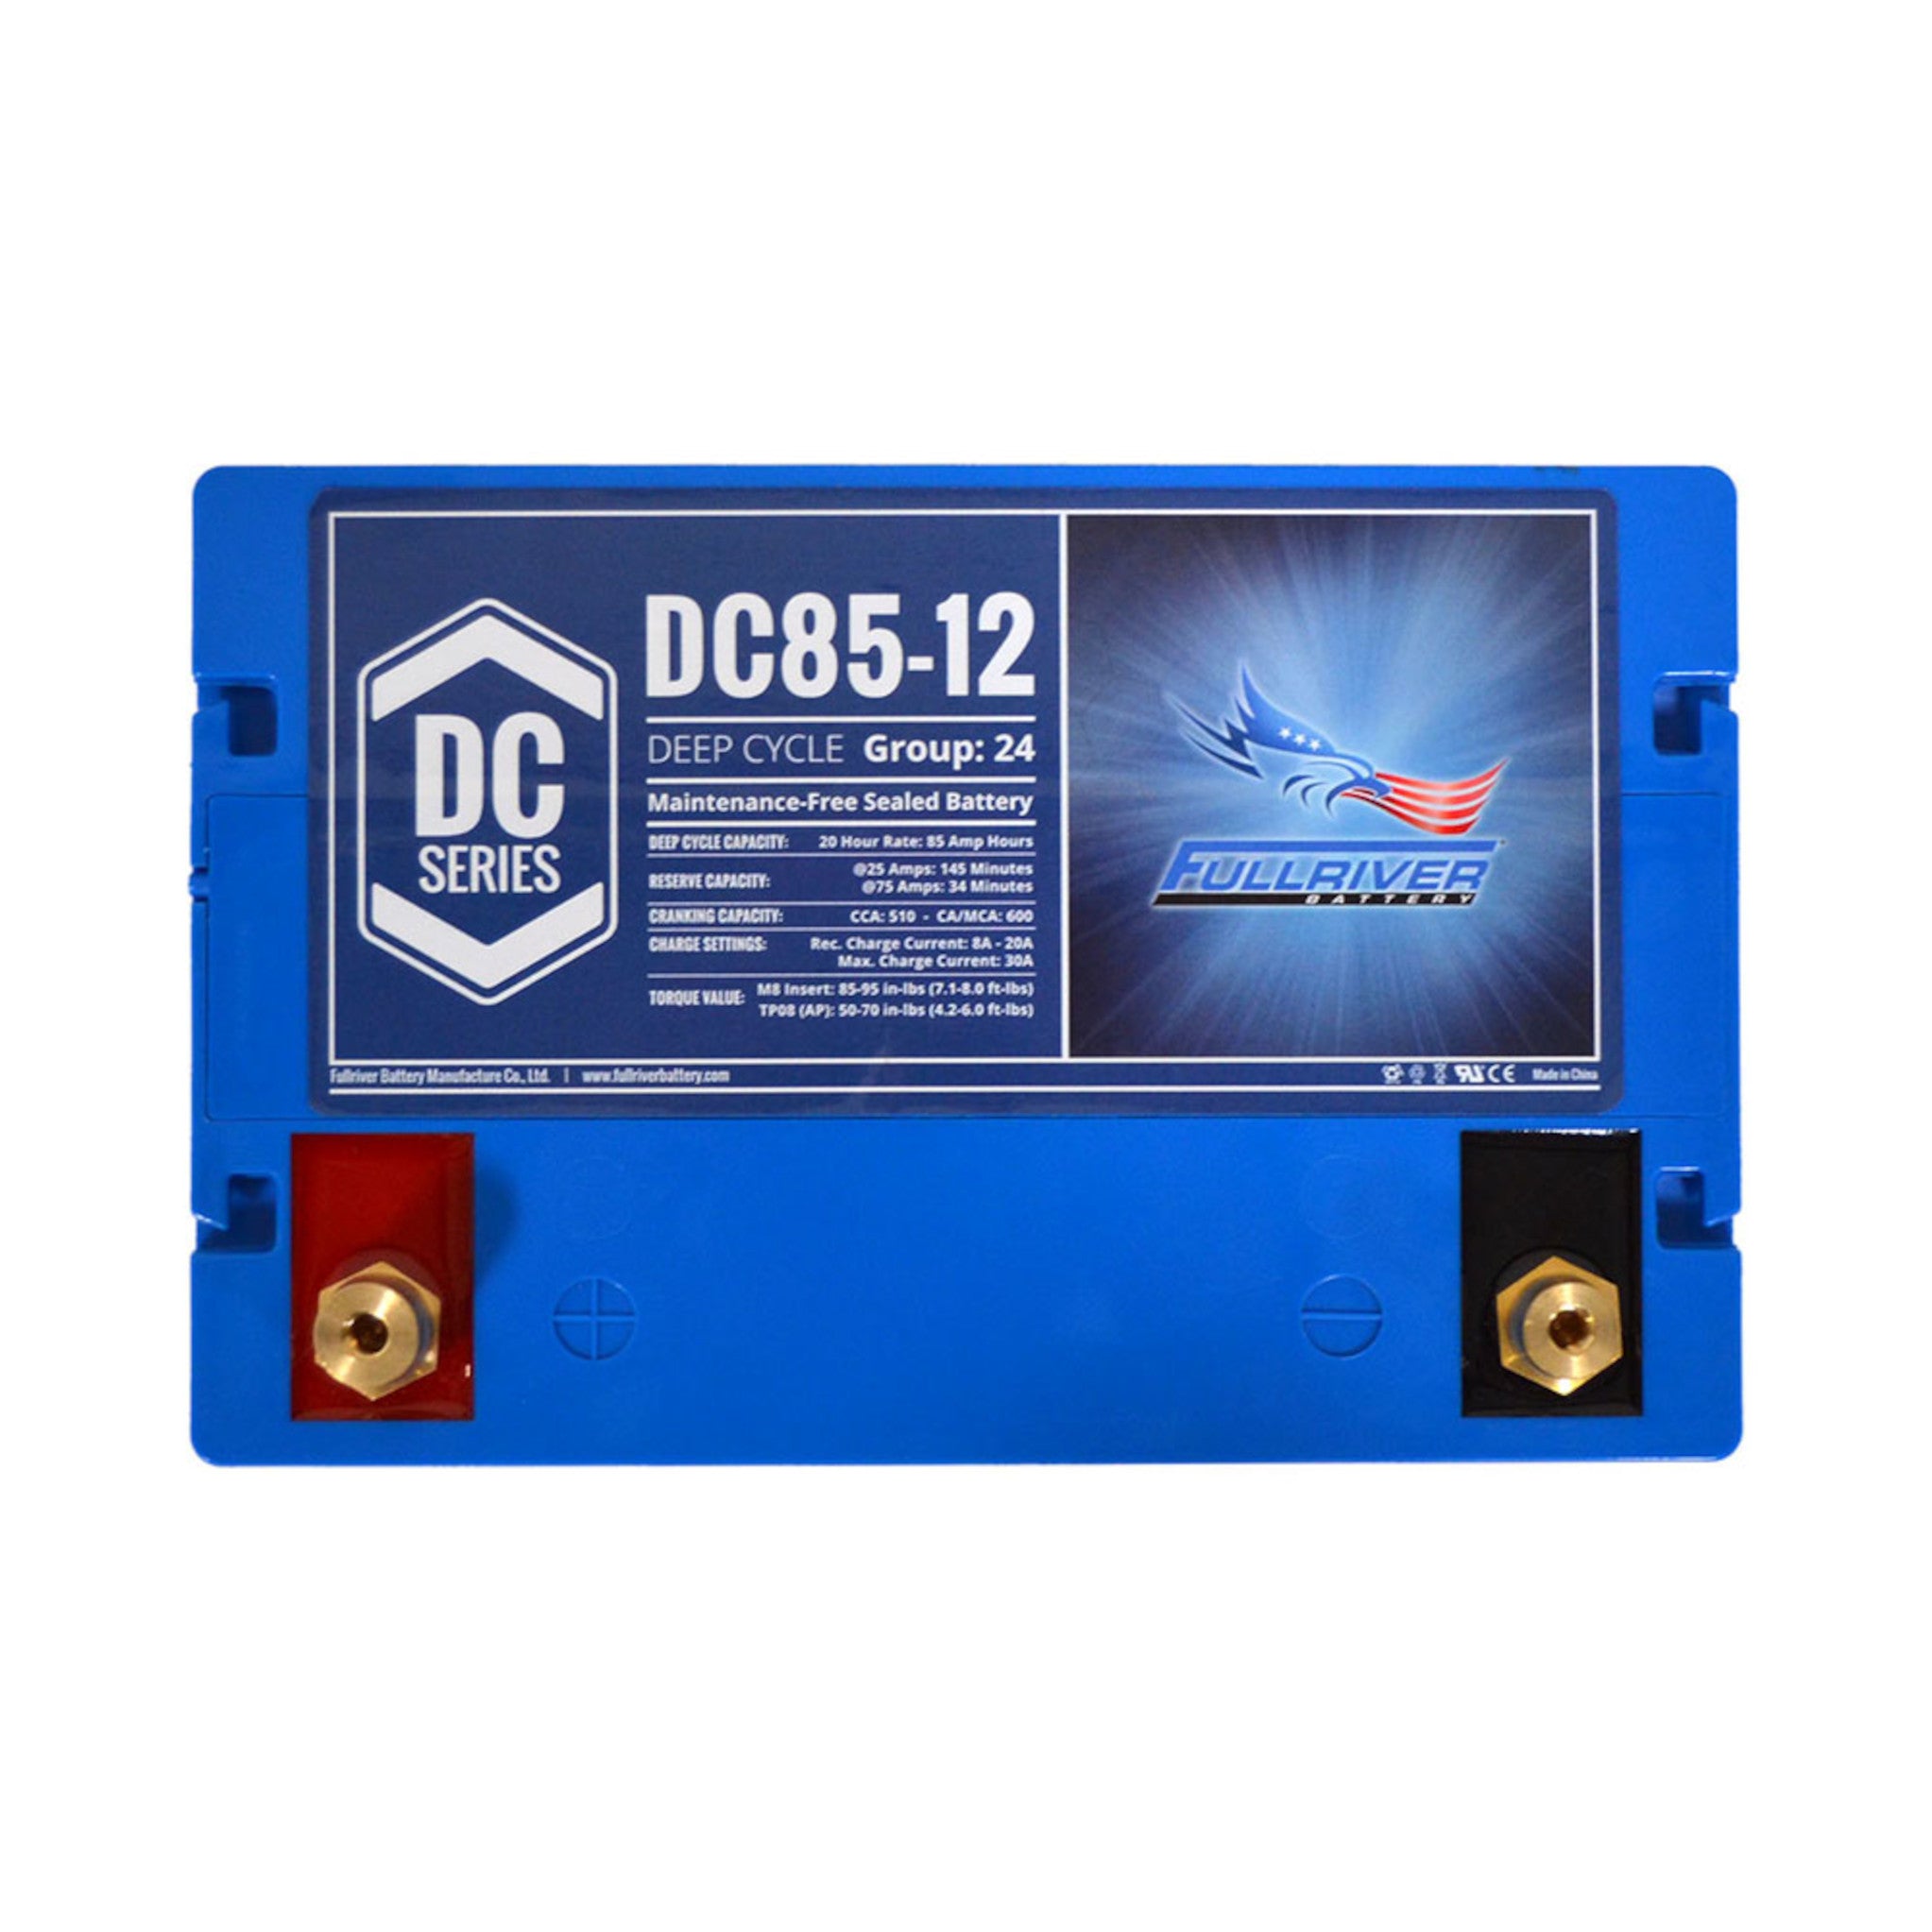 Fullriver DC85-12 AGM Battery